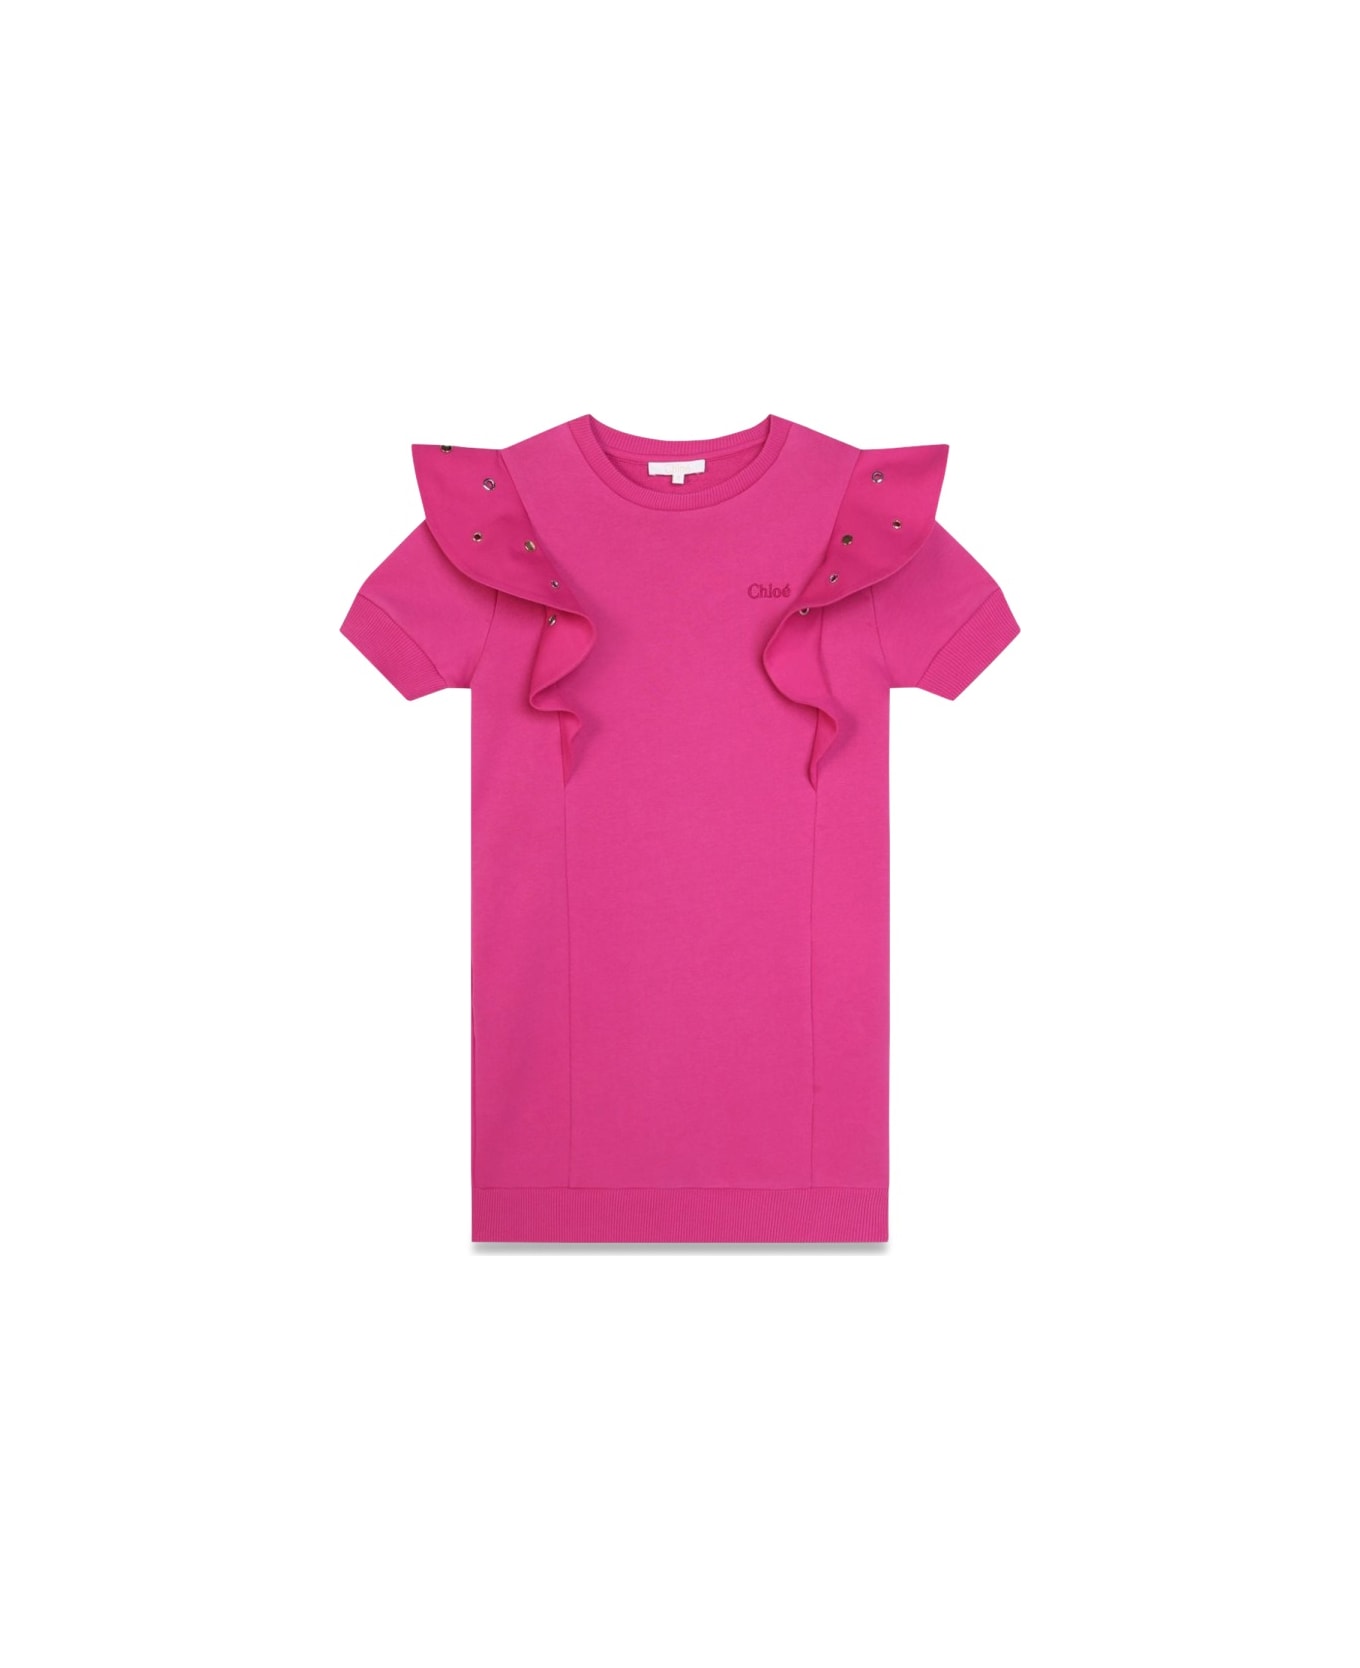 Chloé M/c Dress - PINK